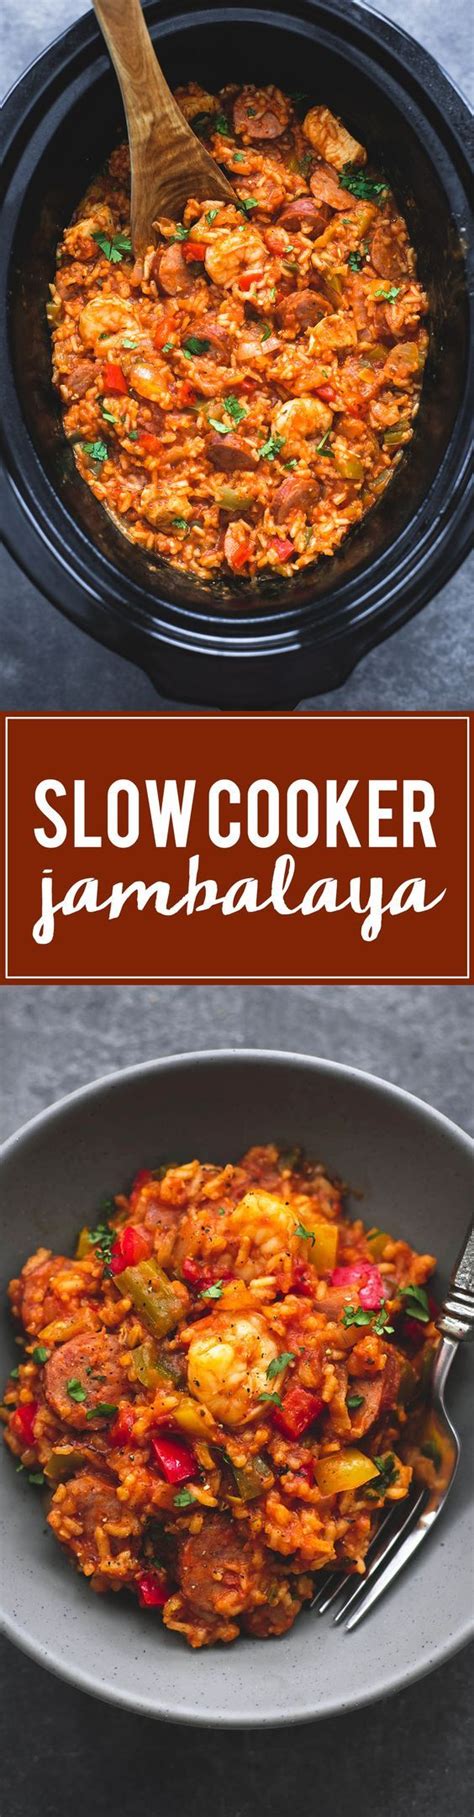 slow cooker jambalaya crock pot food crockpot dishes crock pot slow